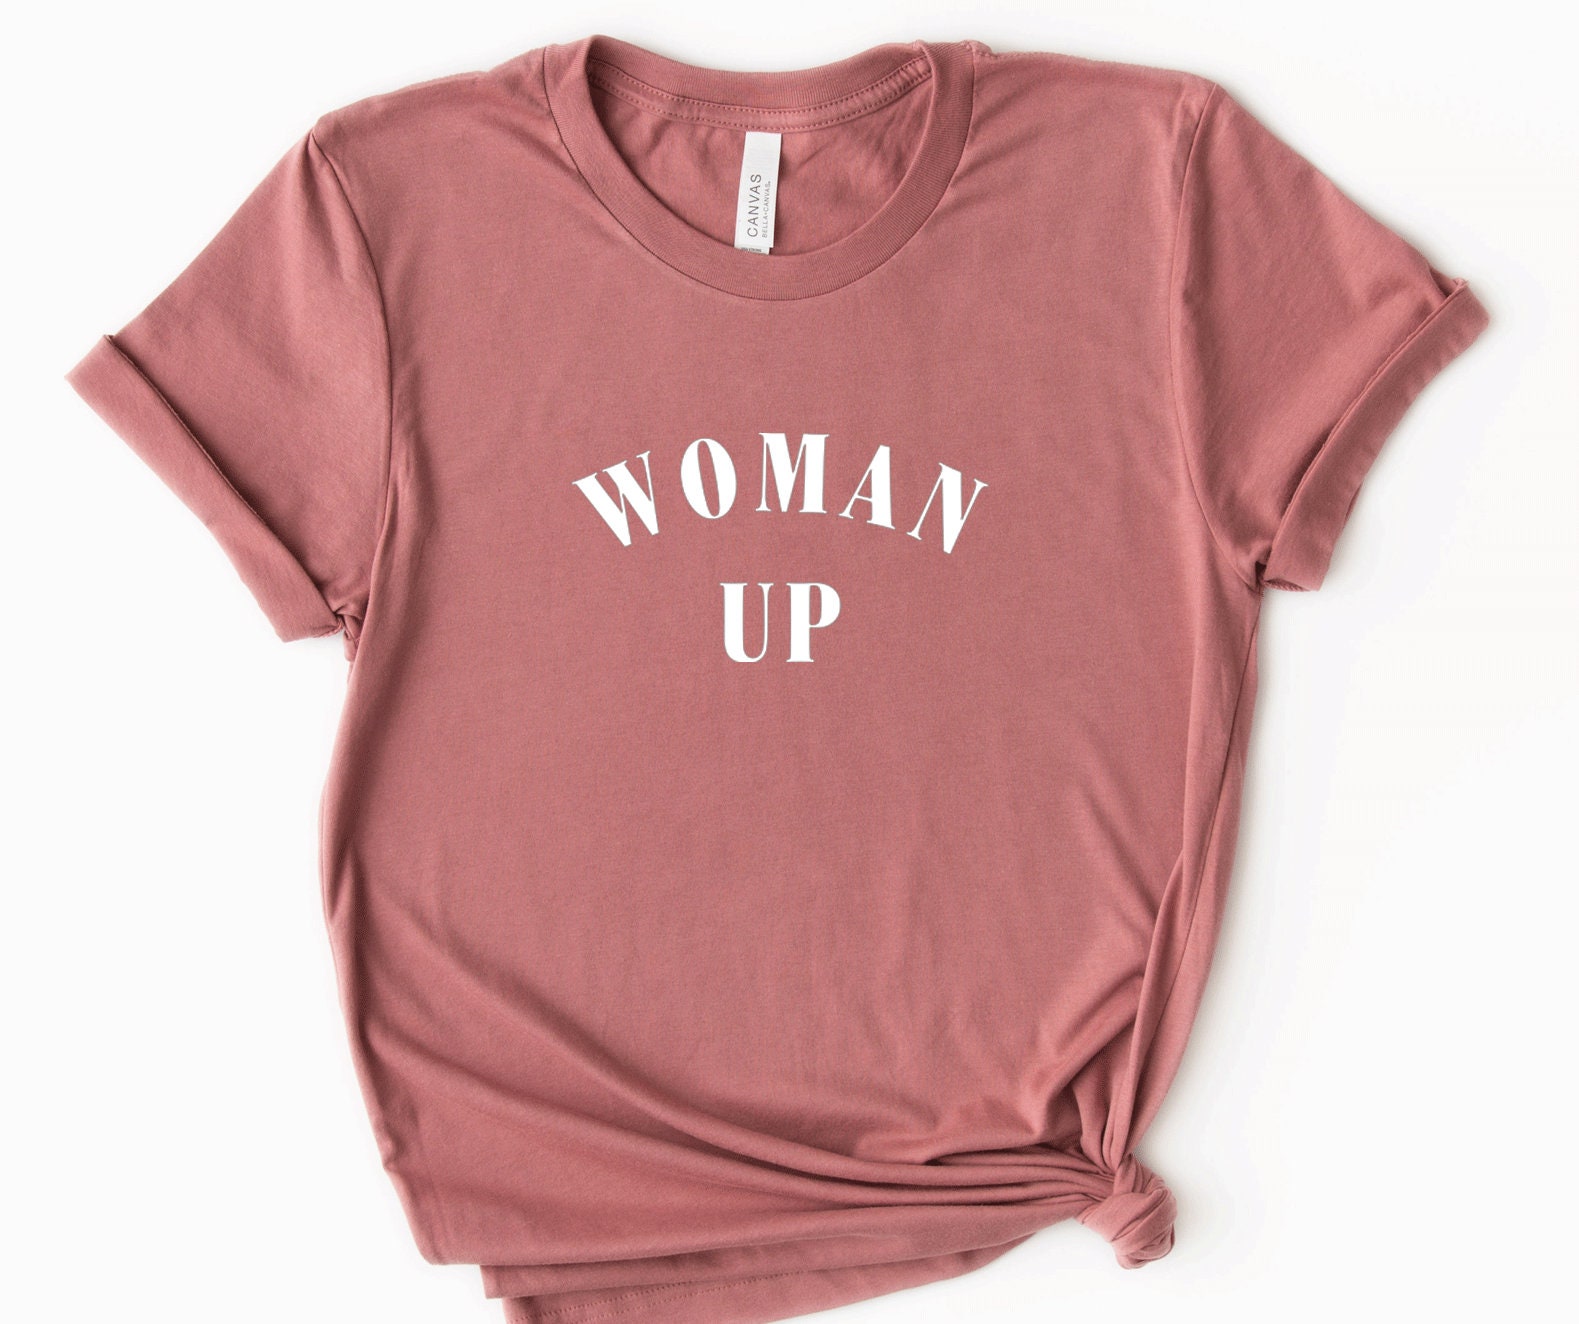 Discover Woman Up Shirt, Feminist Shirt, Womens Empowerment, Fierce Female Shirt, Gift for Daughter, Girl Power